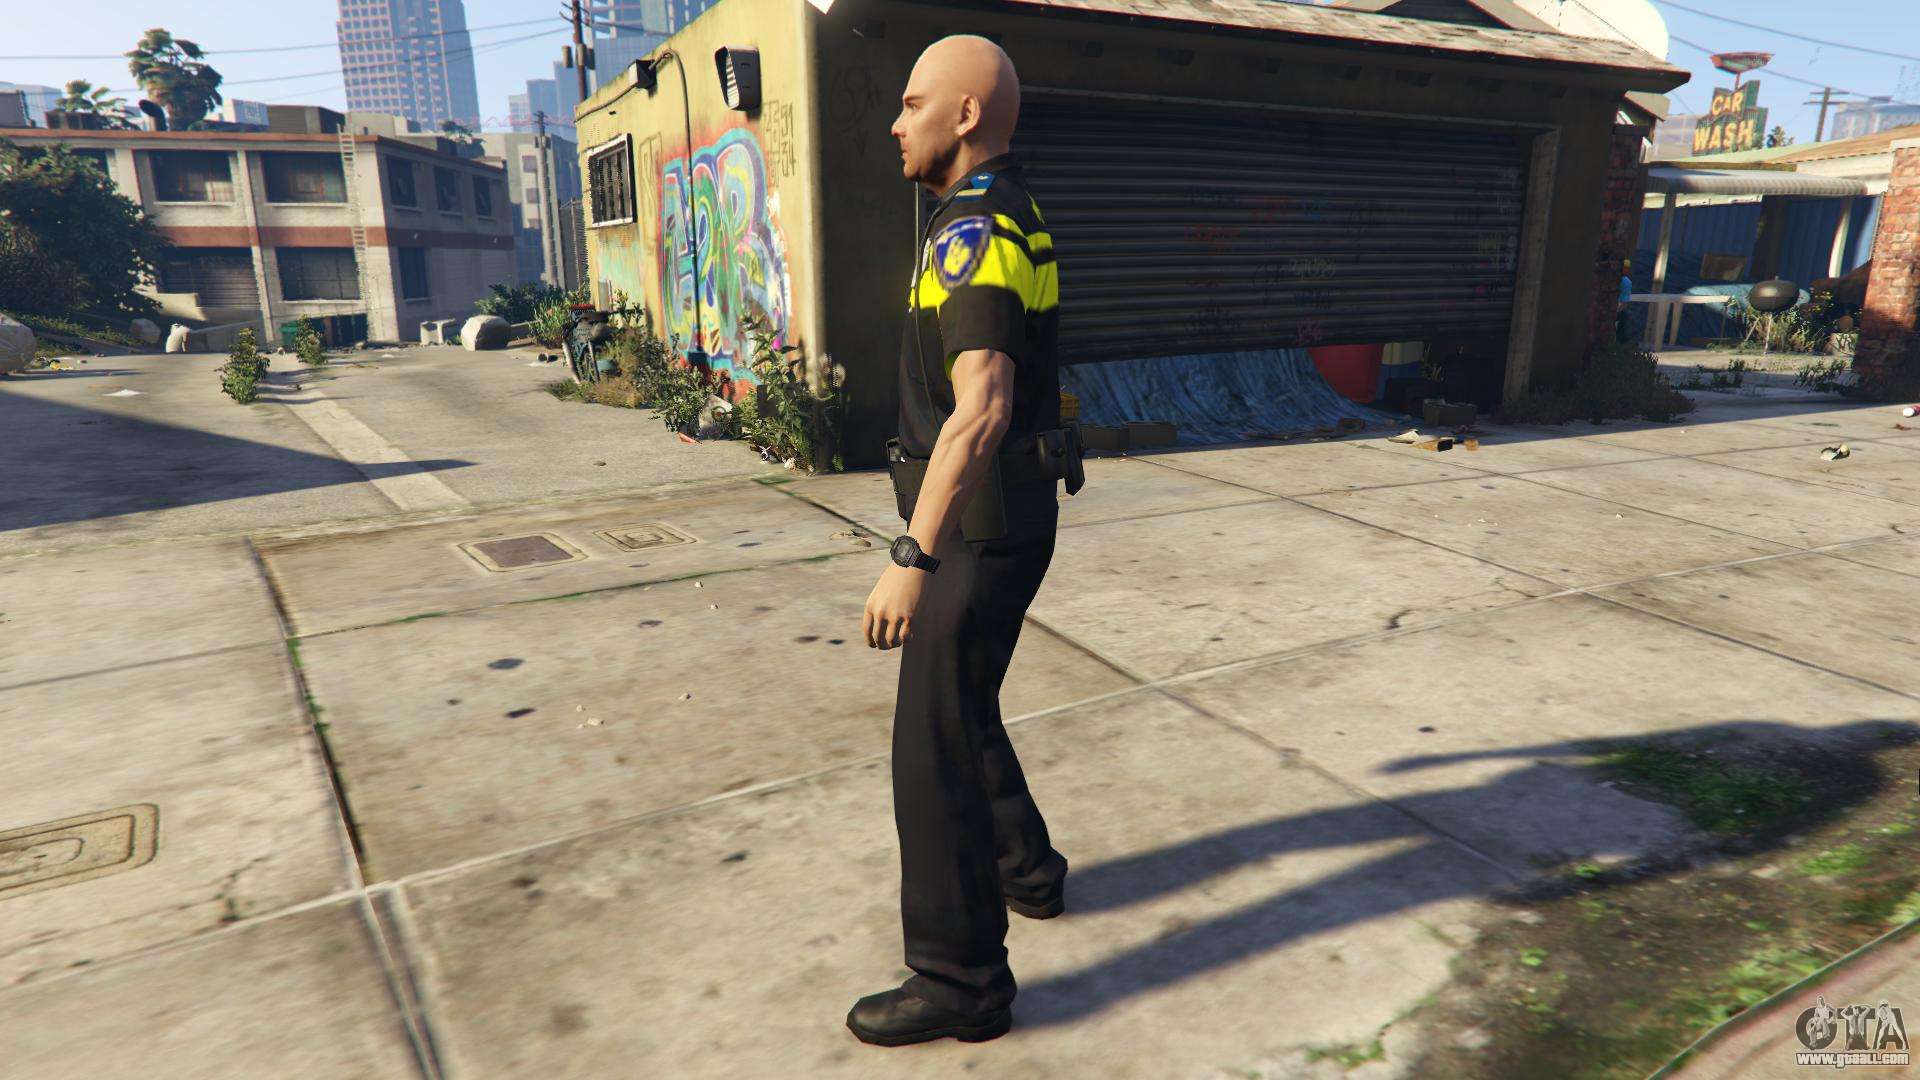 Politie PED Skin for GTA 5